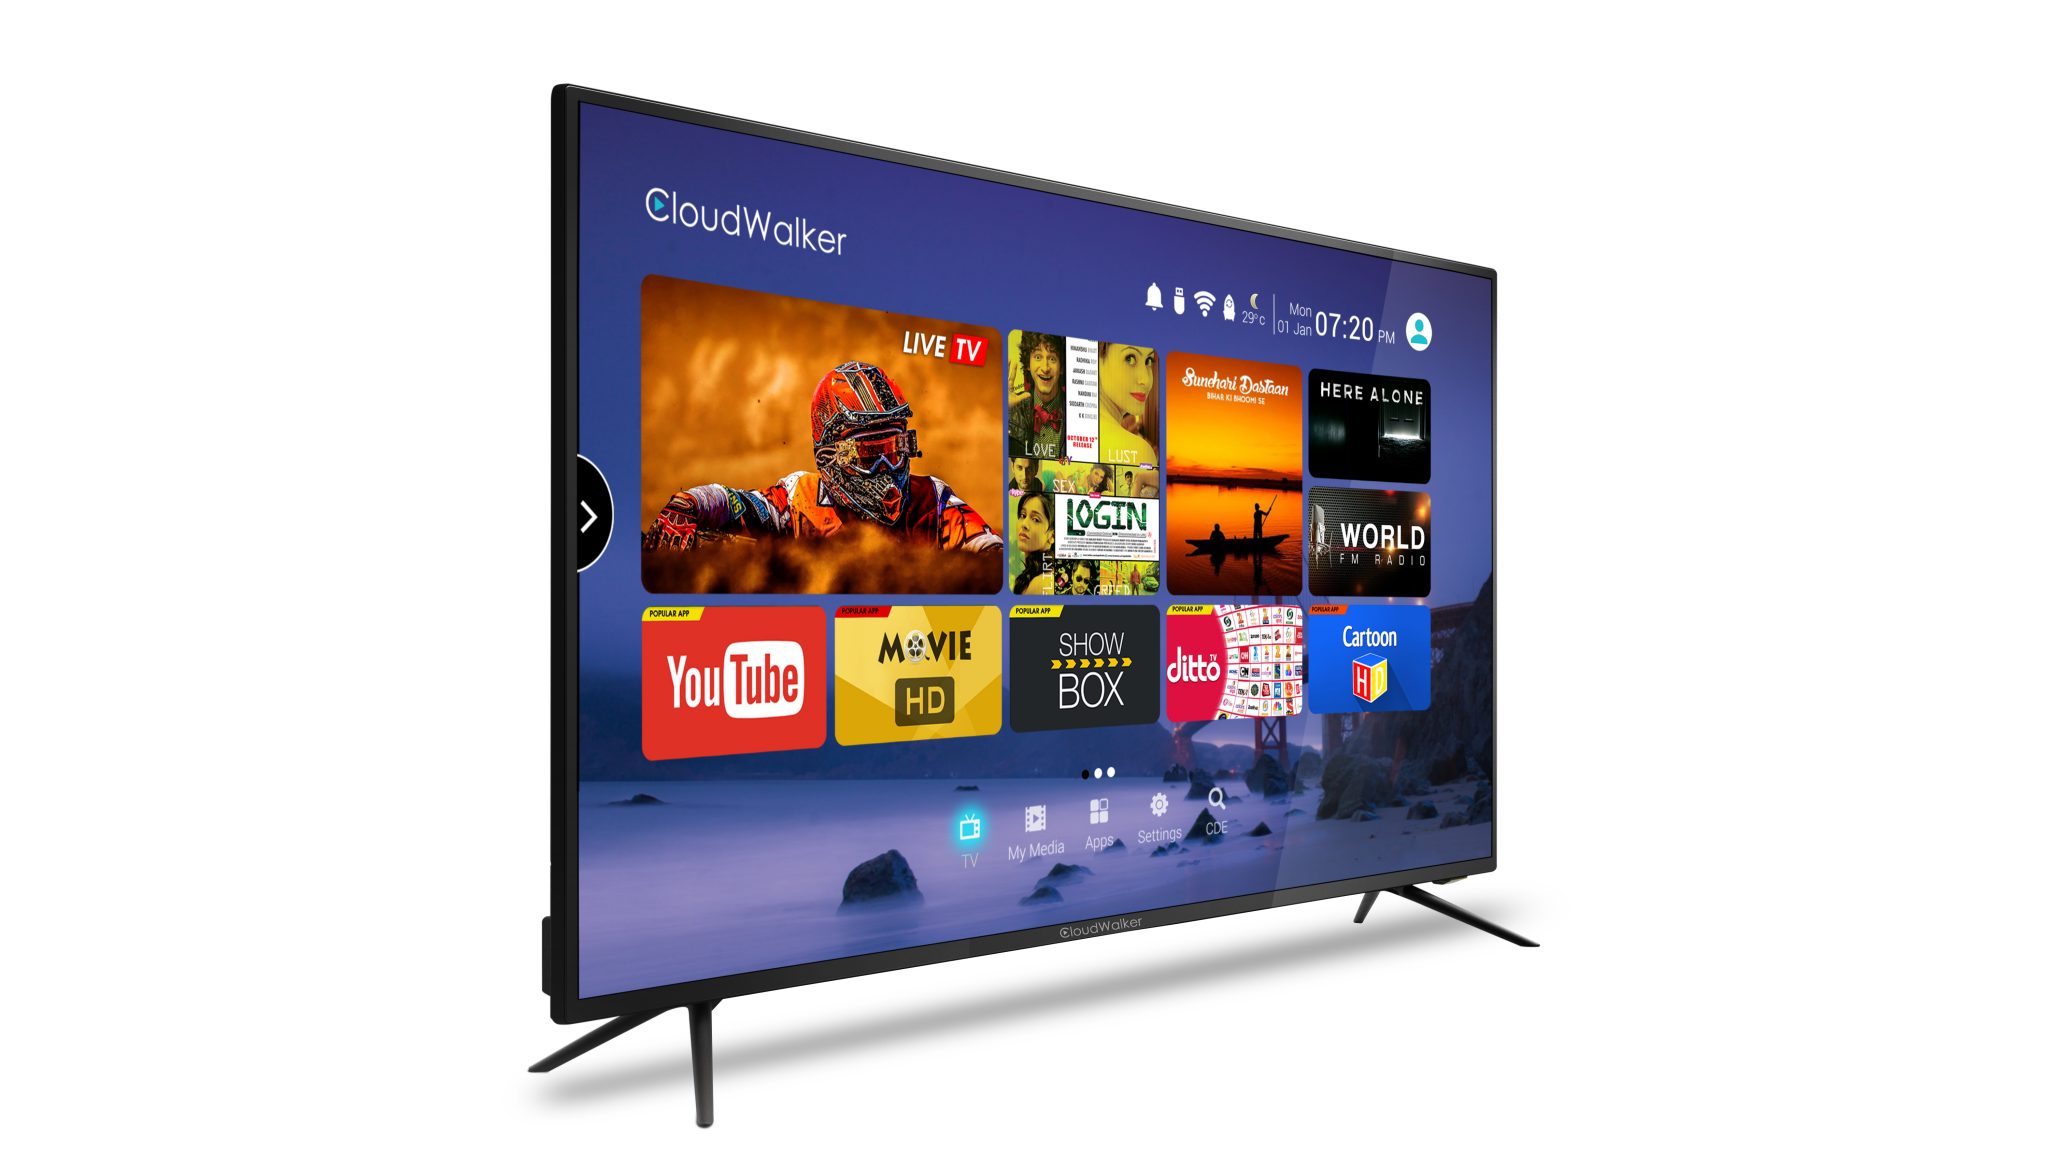 Full hd cloudwalker 4k led tv – good and impressive value for money